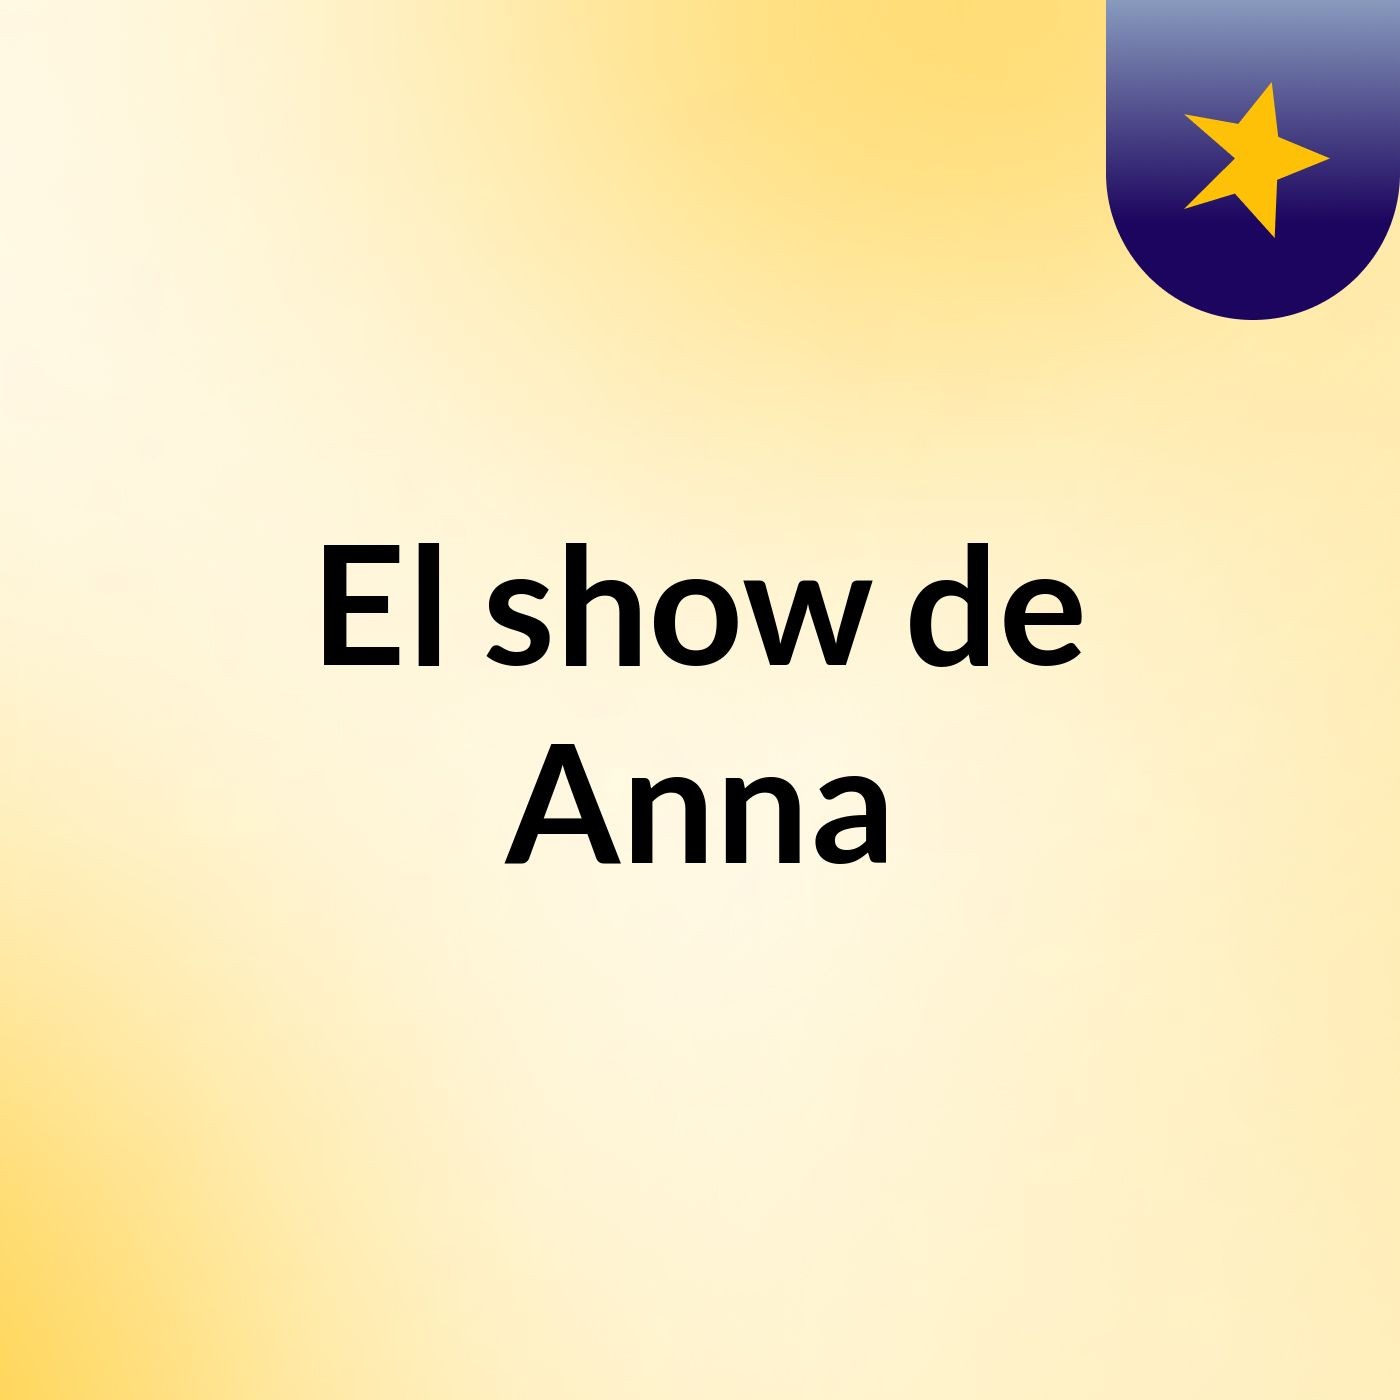 El show de Anna